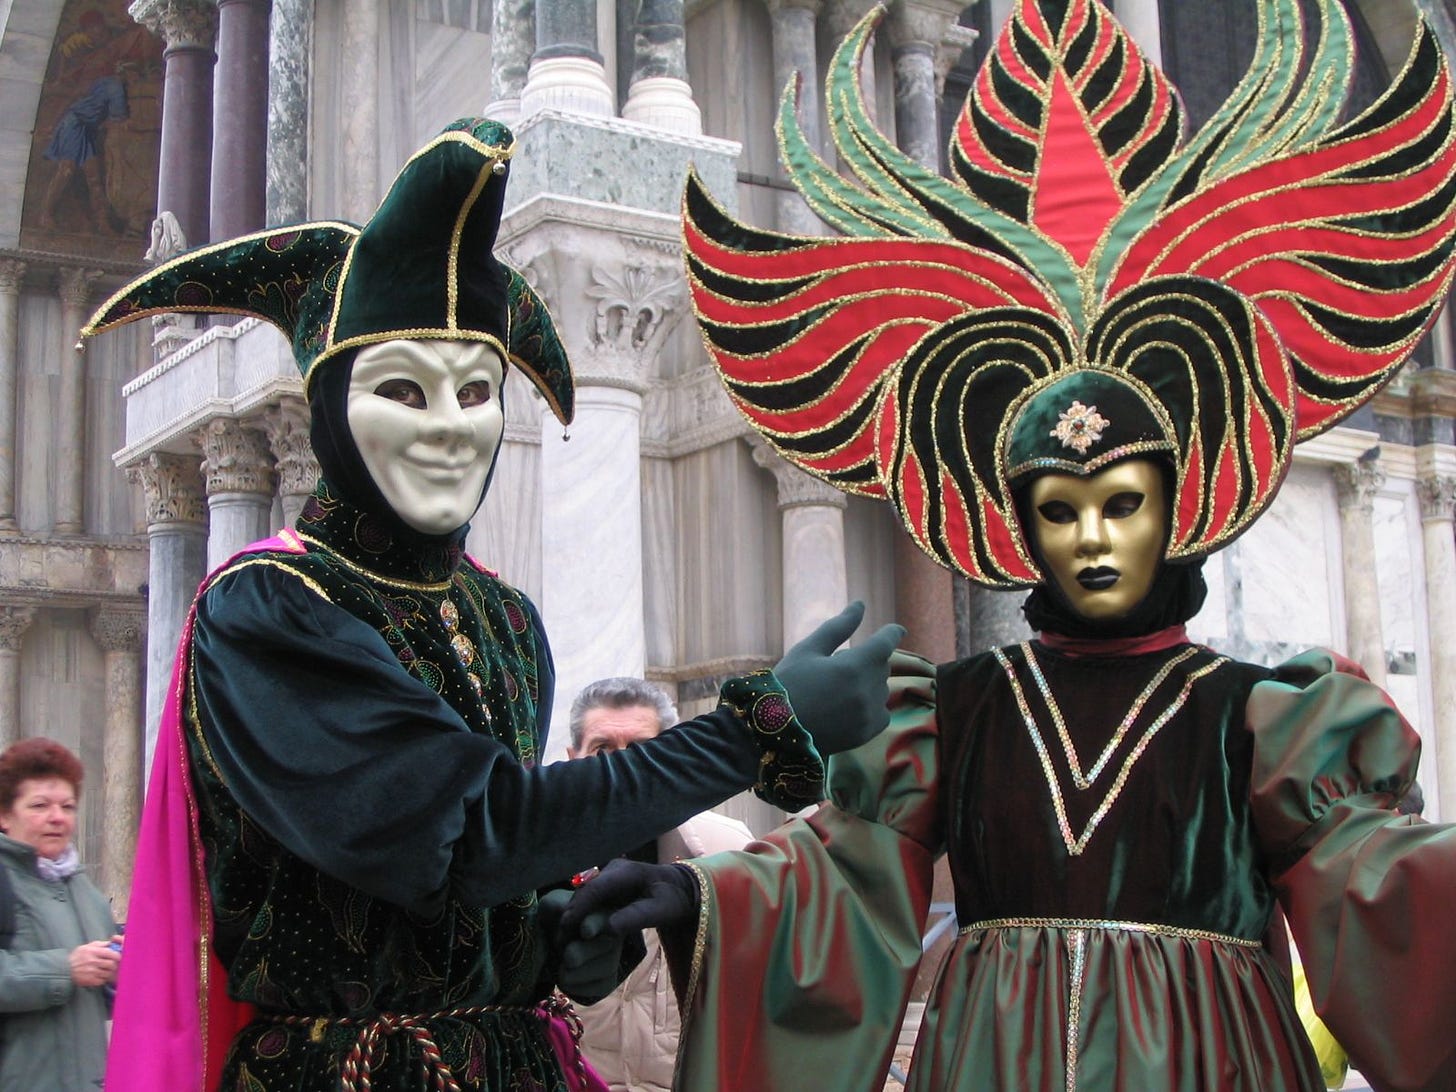 Masquerade ball - Wikipedia